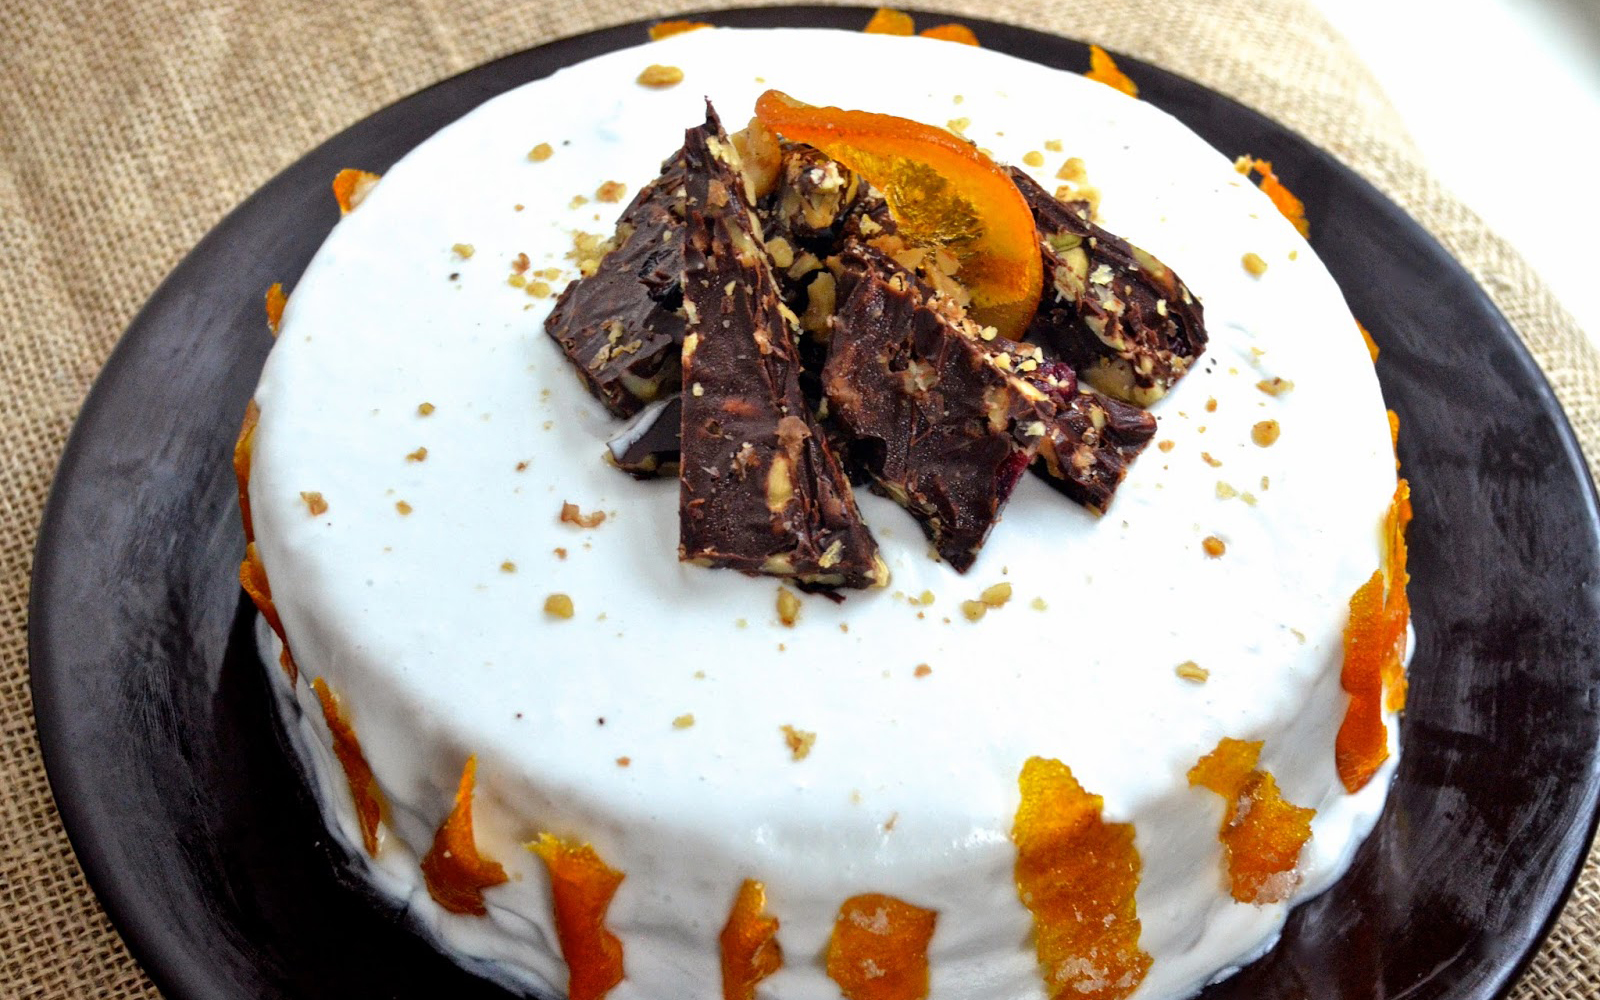 Vegan orange cream cake with candied orange peel